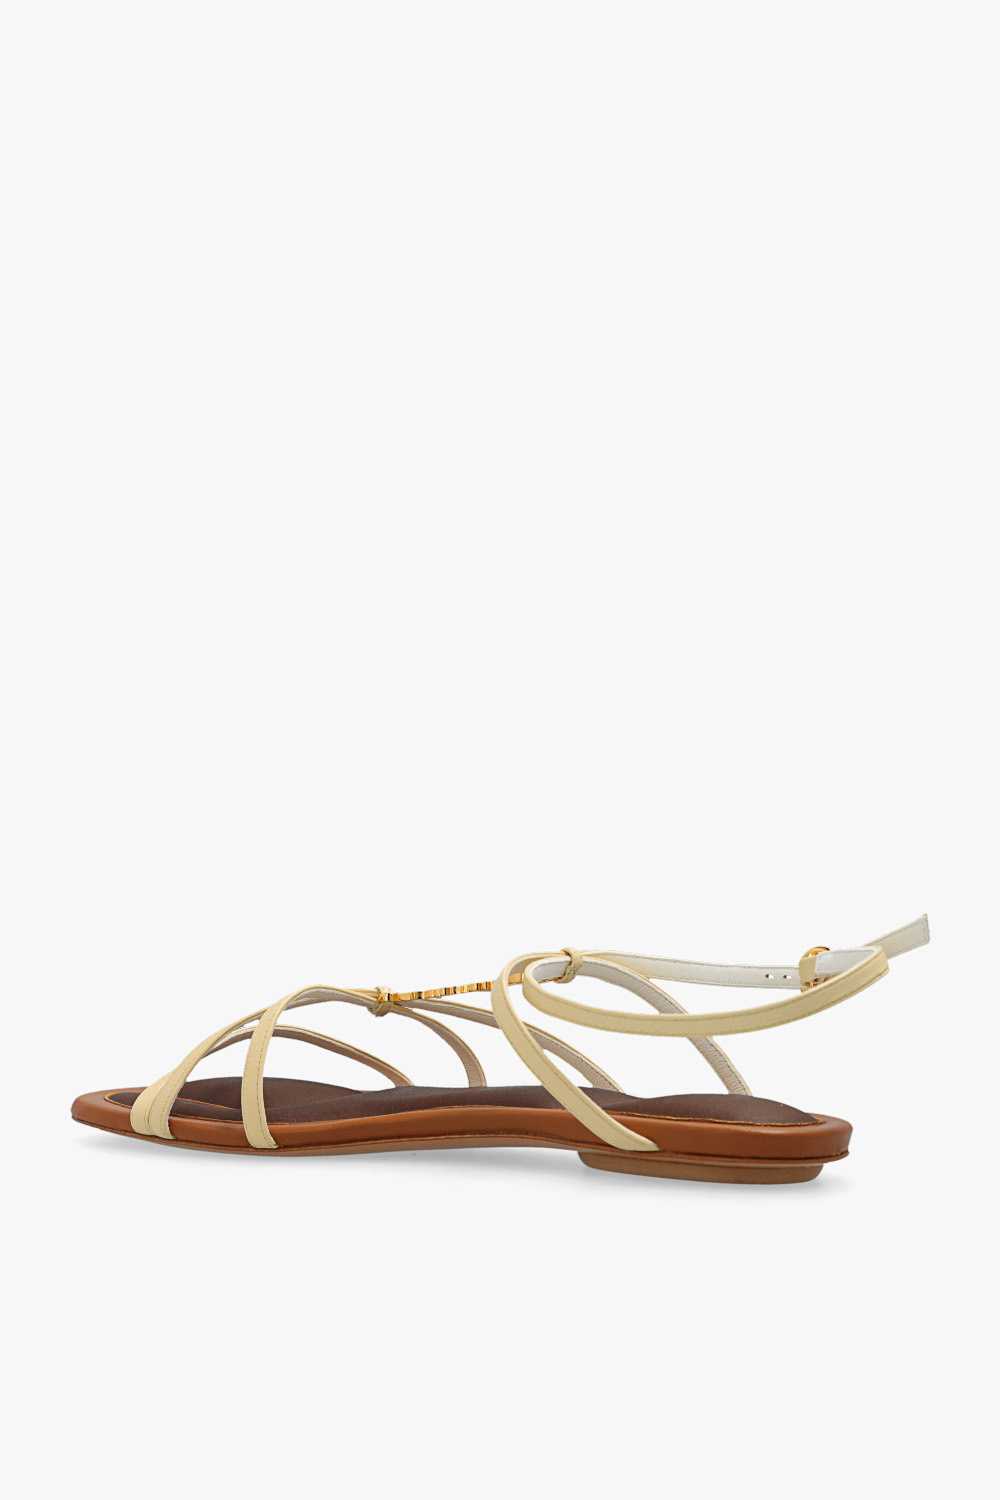 Jacquemus ‘Pralu’ sandals